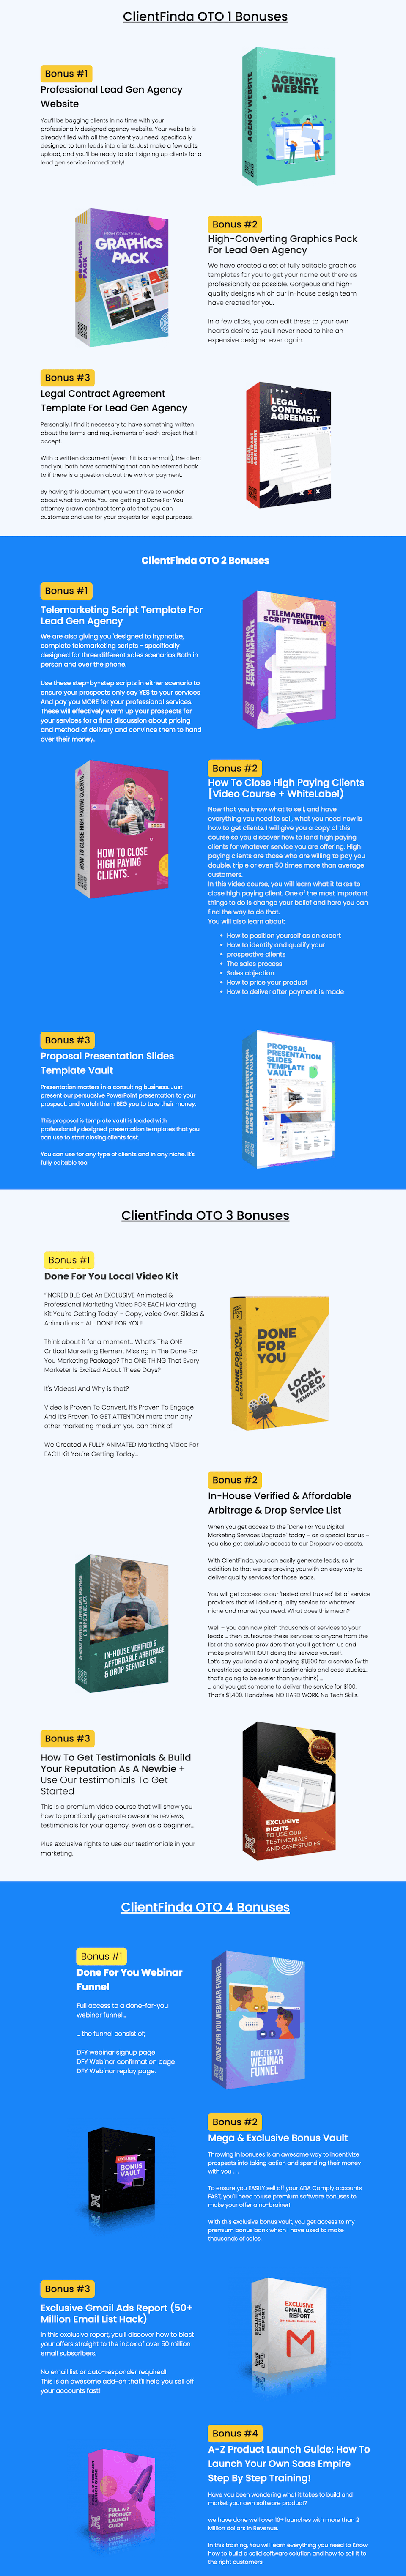 ClientFinda-Review-OTOs-Bonuses